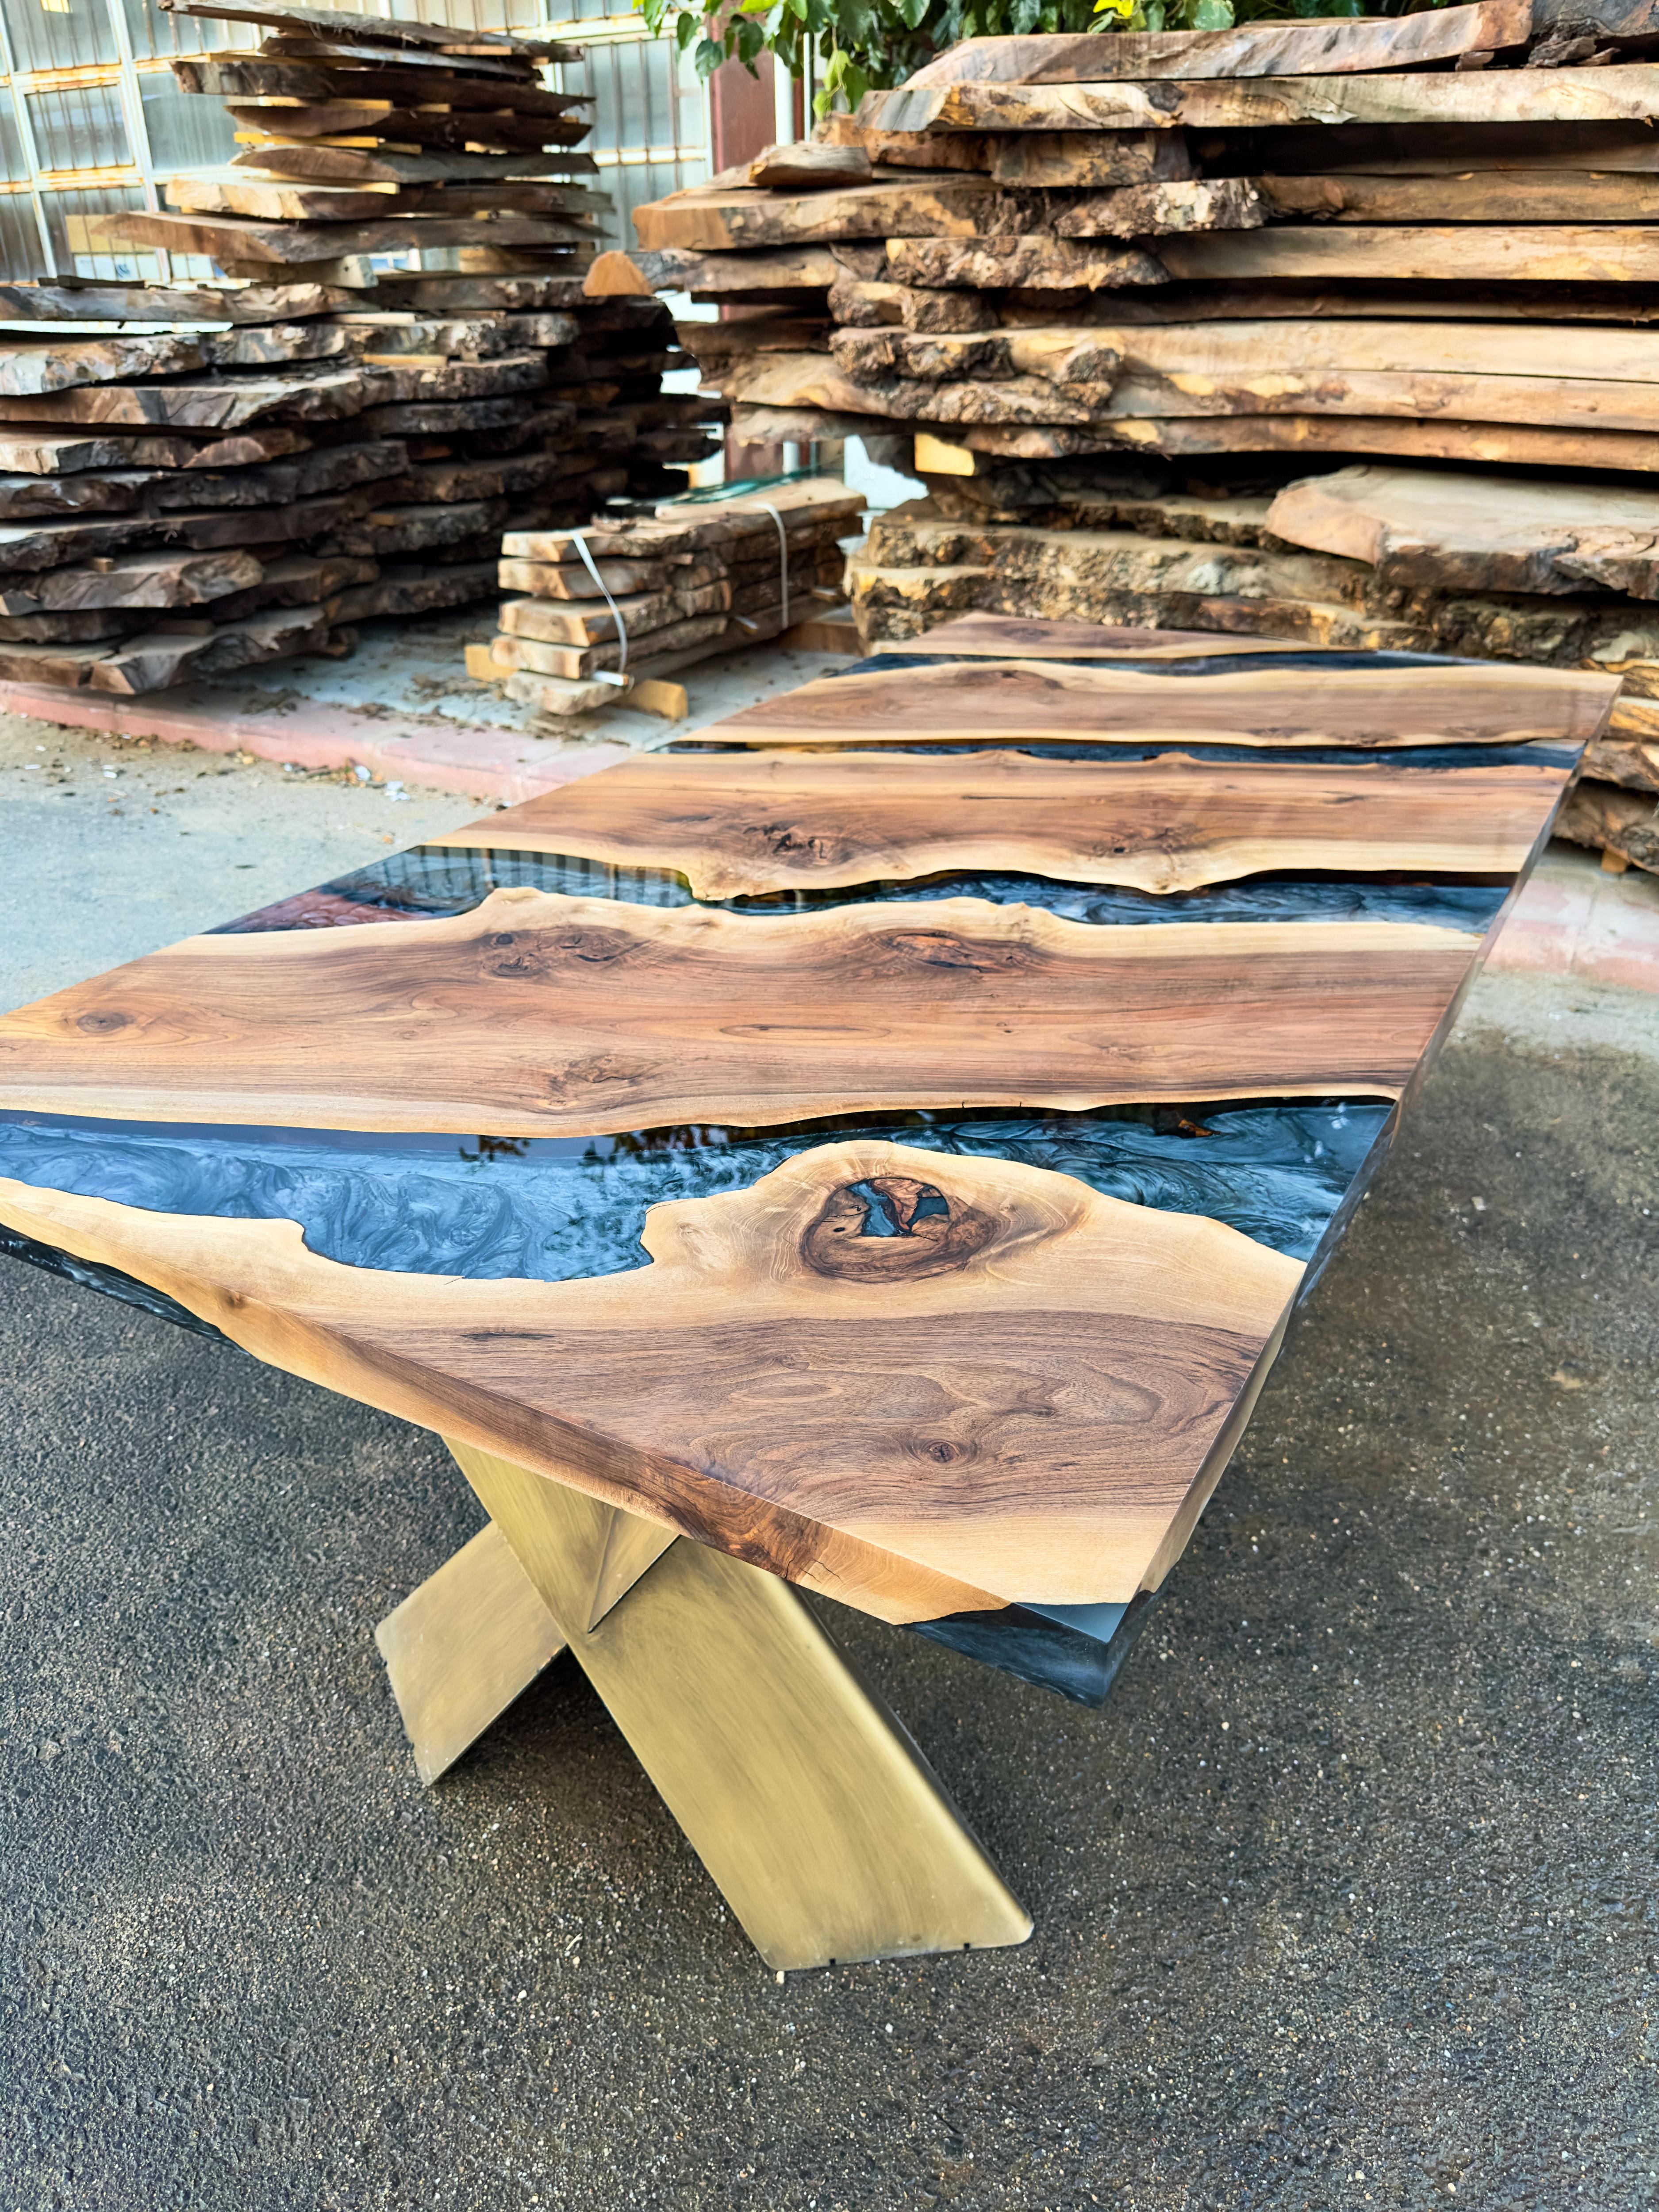 Table époxy en noyer sur mesure

Cette superbe table est fabriquée en bois de noyer noir. La beauté unique des courbes naturelles du bois d'olivier combinées à l'époxy bleu se retrouve dans cette table.

Tous les bois ont leur propre forme